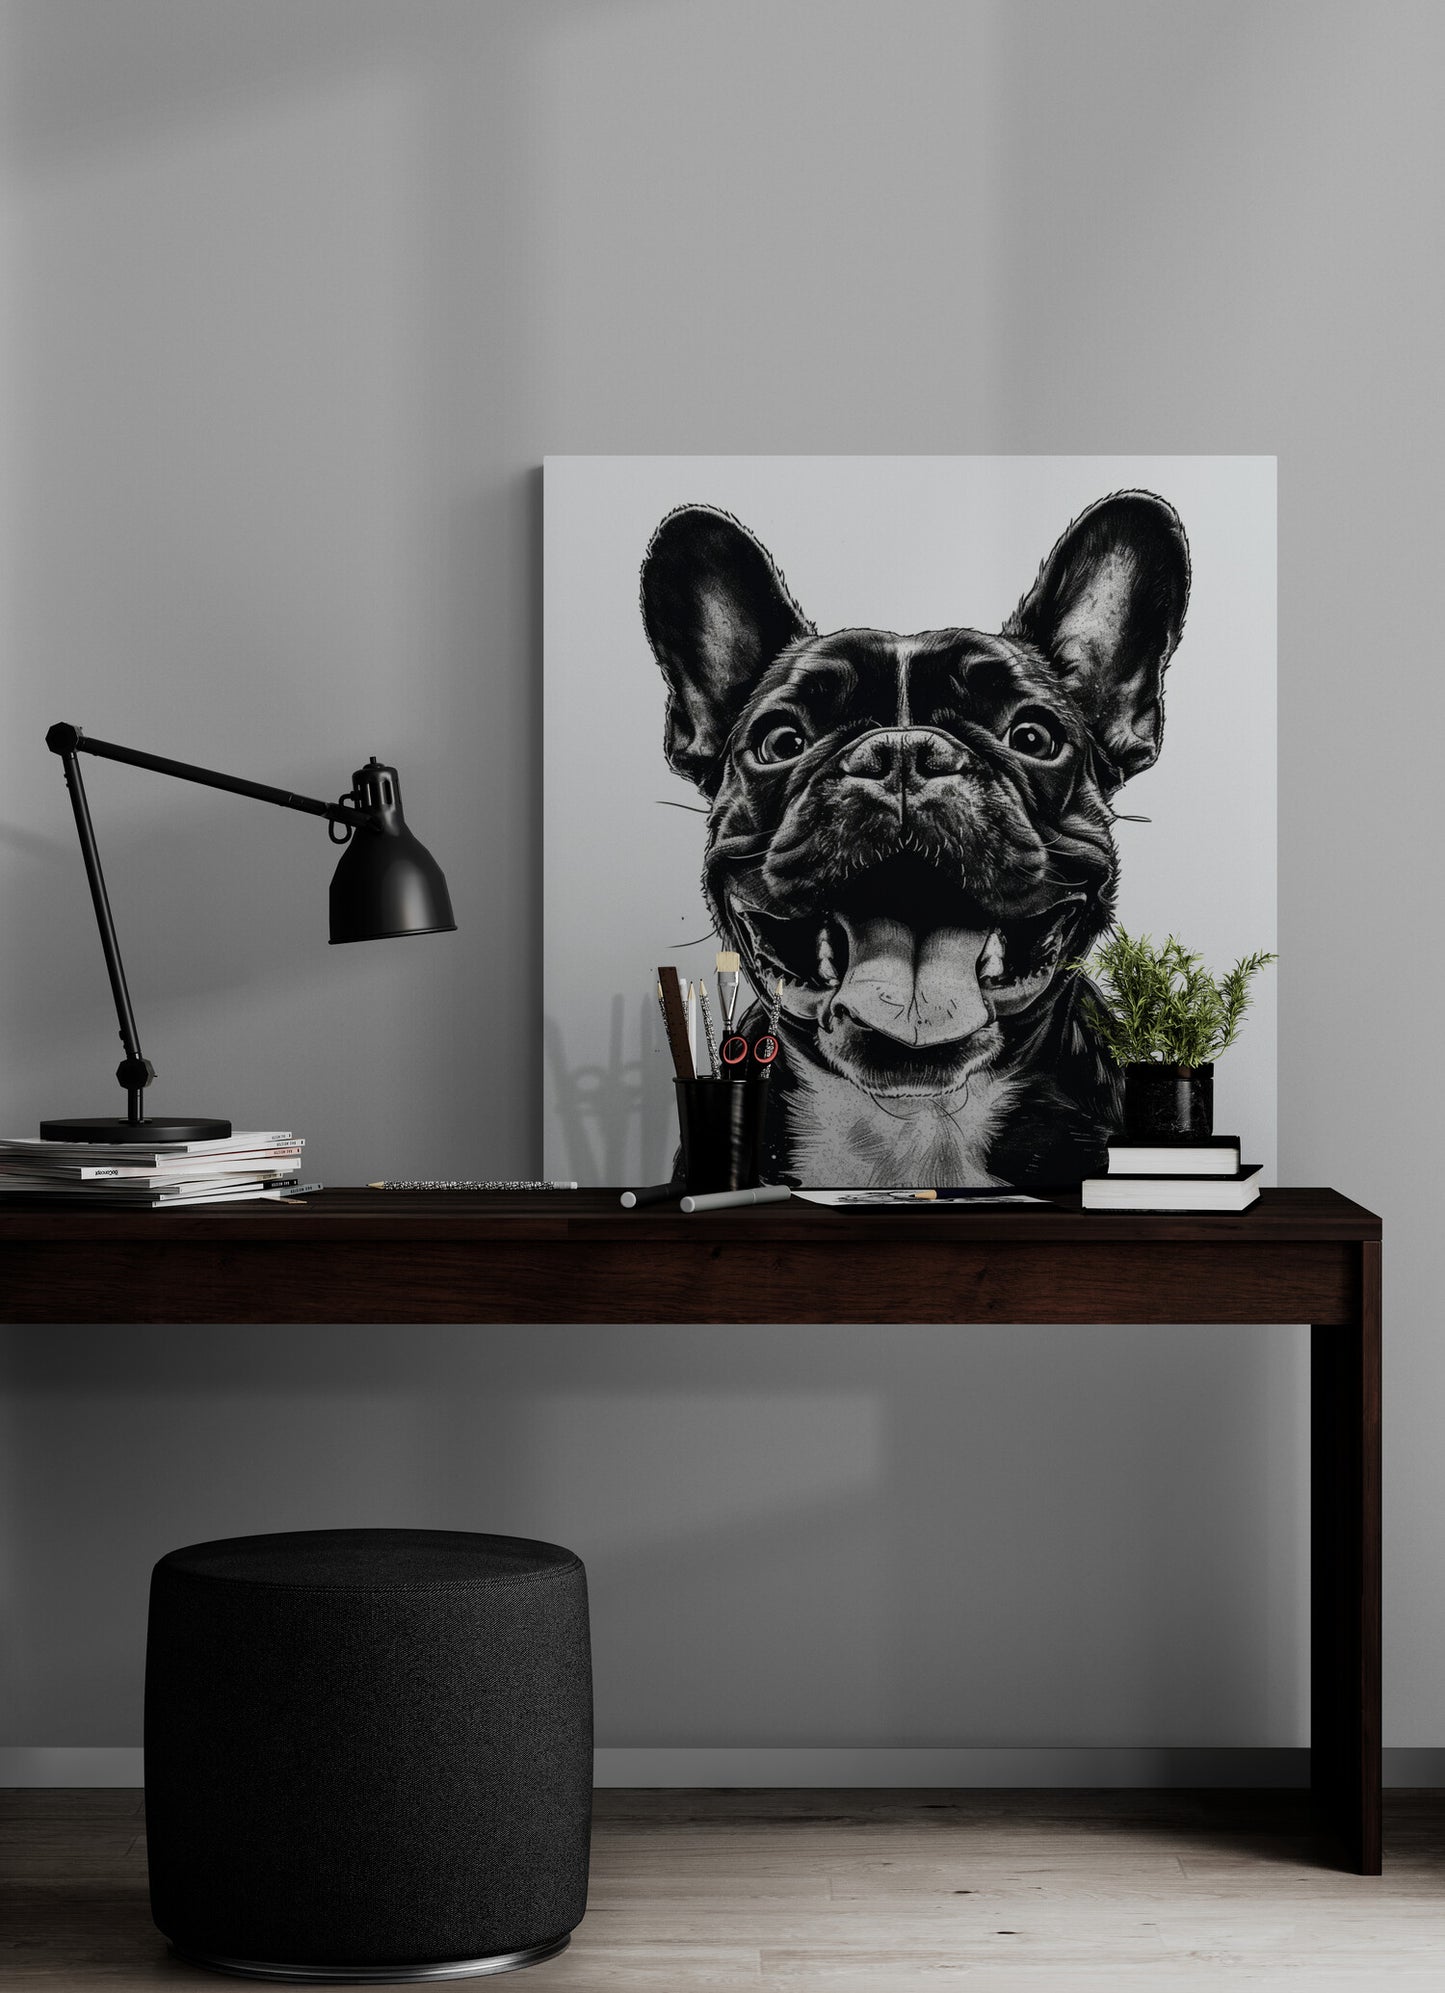 bureau en bois foncé, pouf noir, lampe noire, pile de livres, pot à crayon, plante, poster chien portrait.